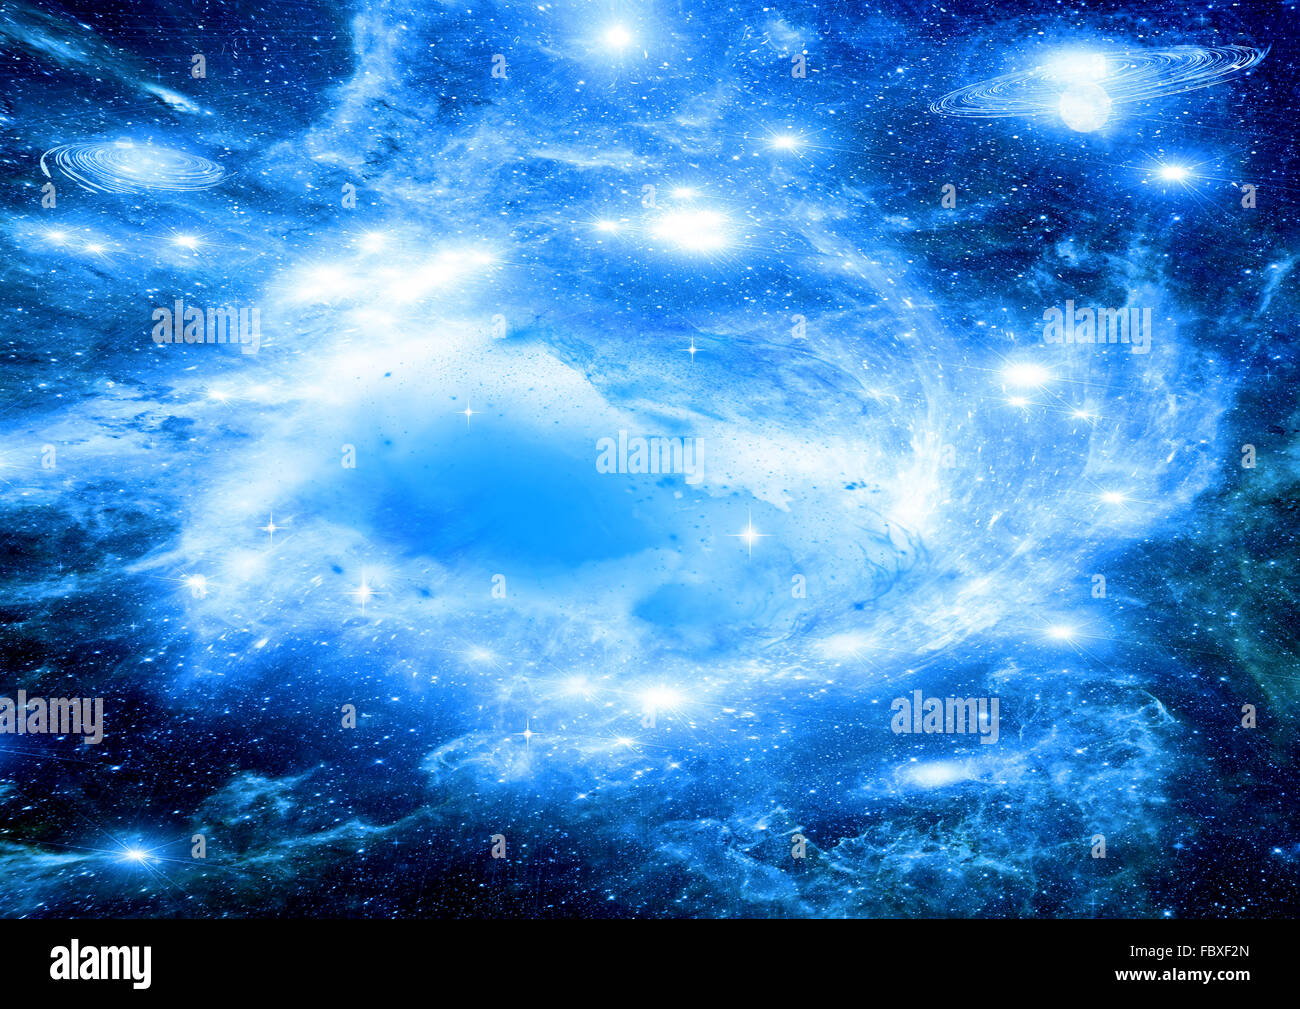 Galaxy in uno spazio libero Foto Stock